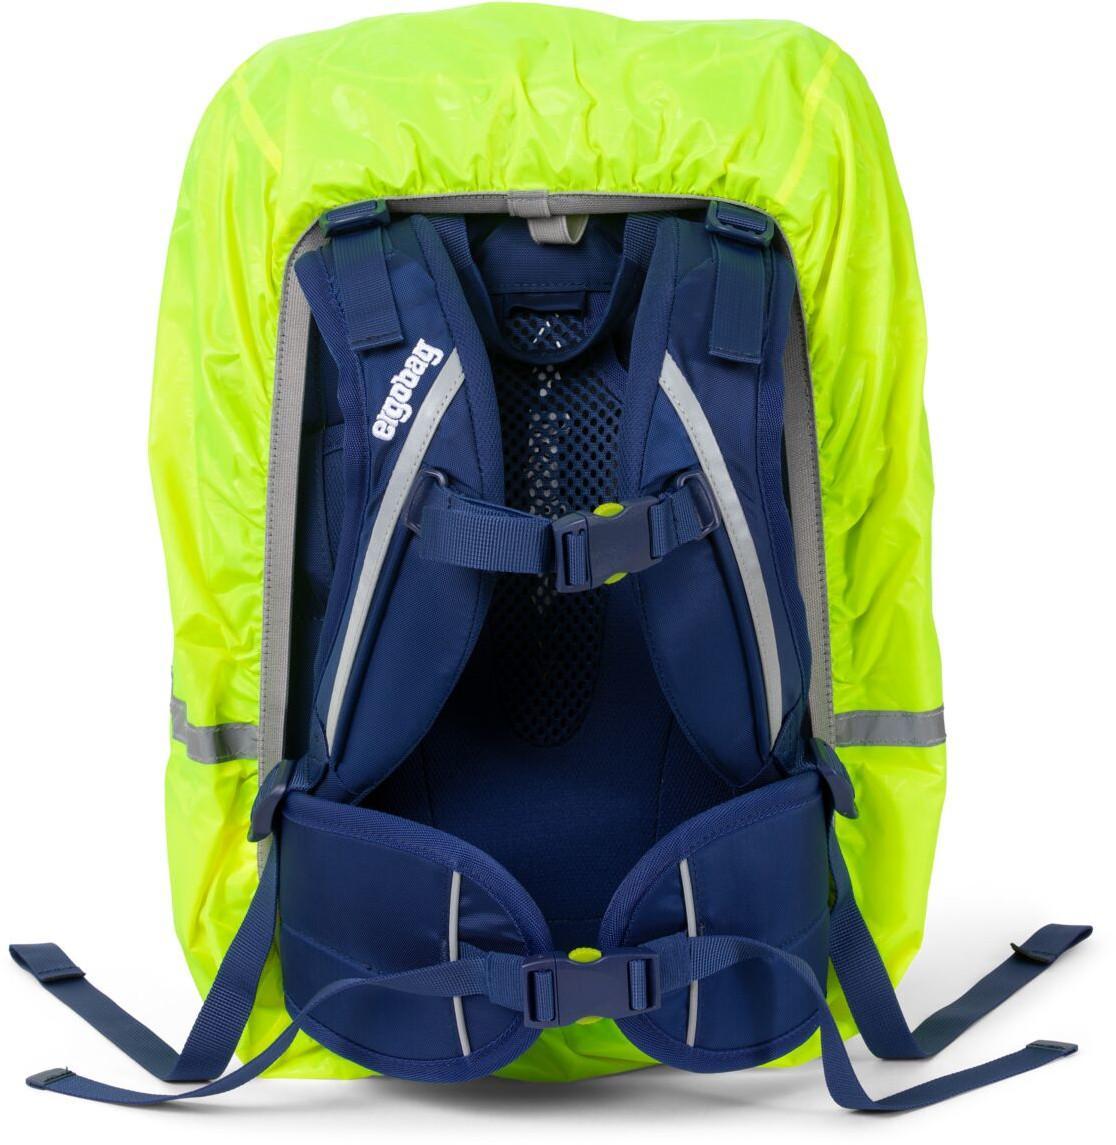 Regenschutz für Schultasche ergobag gelb reflektierend